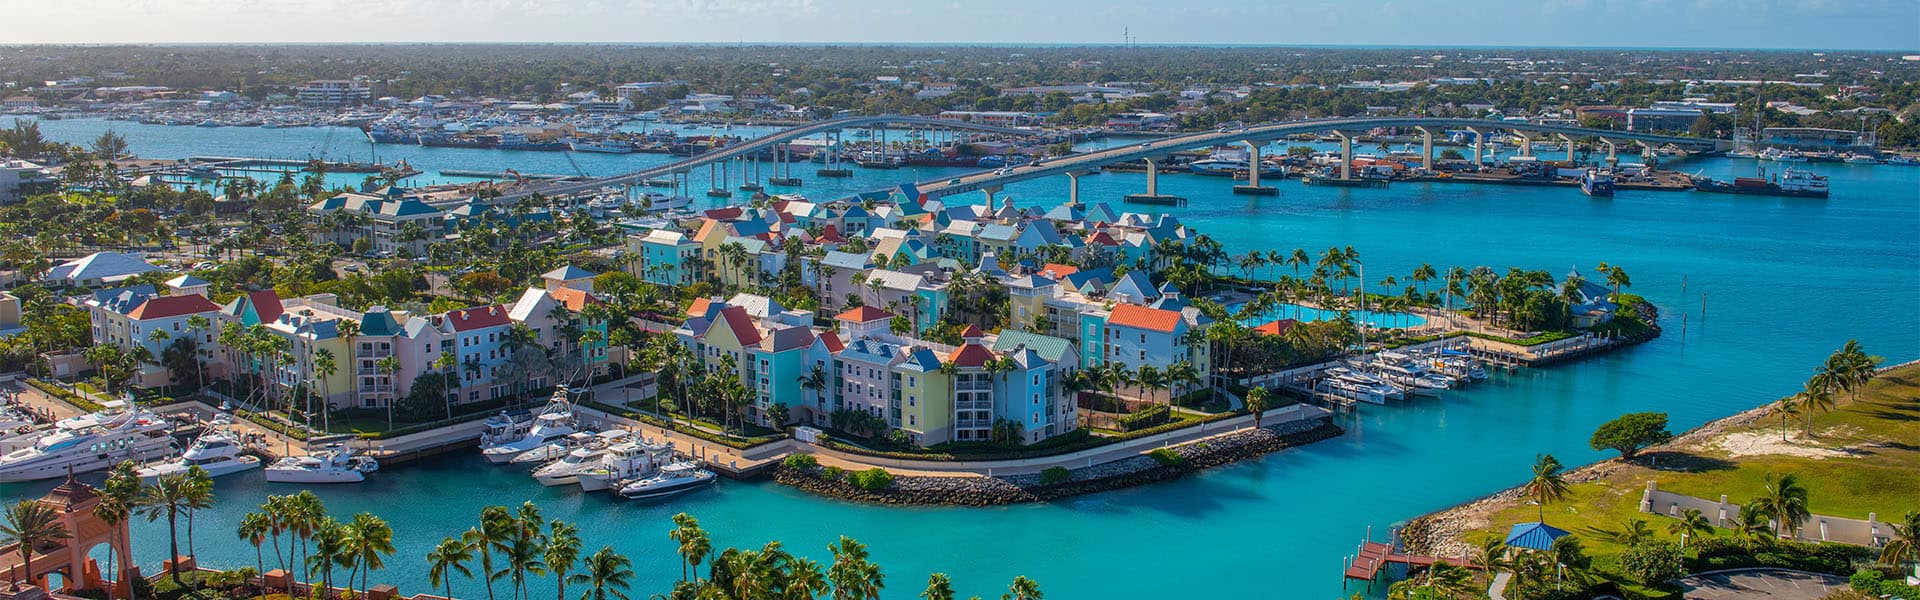 Bahamas: Great Stirrup Cay & Nassau